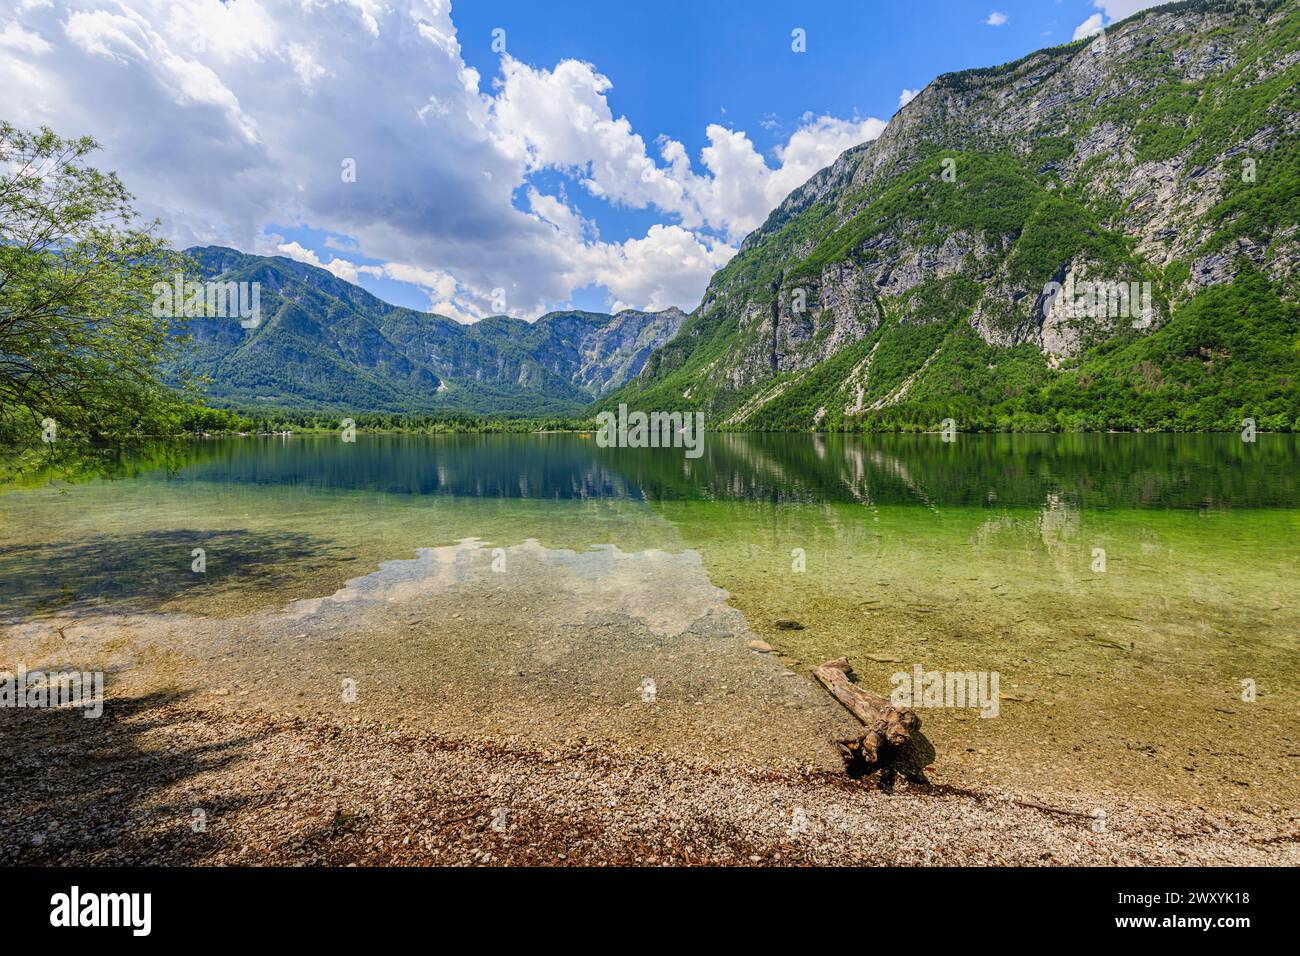 Panoramablick auf die Küste, das klare Wasser und die Berge rund um den Bohinj-See, ein beliebtes Touristenziel in Slowenien, Mittel- und Osteuropa Stockfoto